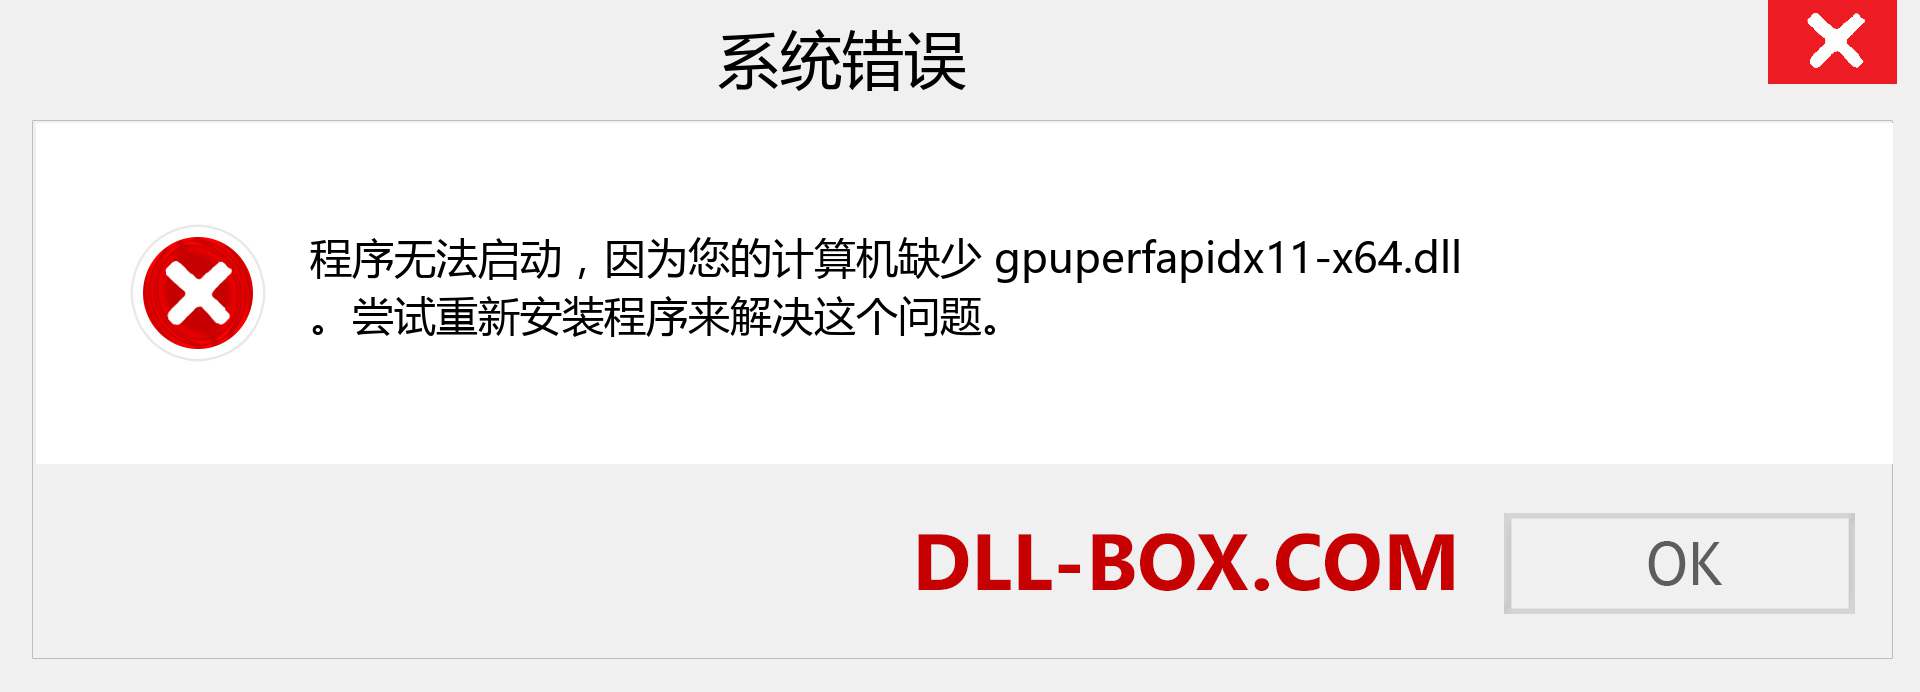 gpuperfapidx11-x64.dll 文件丢失？。 适用于 Windows 7、8、10 的下载 - 修复 Windows、照片、图像上的 gpuperfapidx11-x64 dll 丢失错误